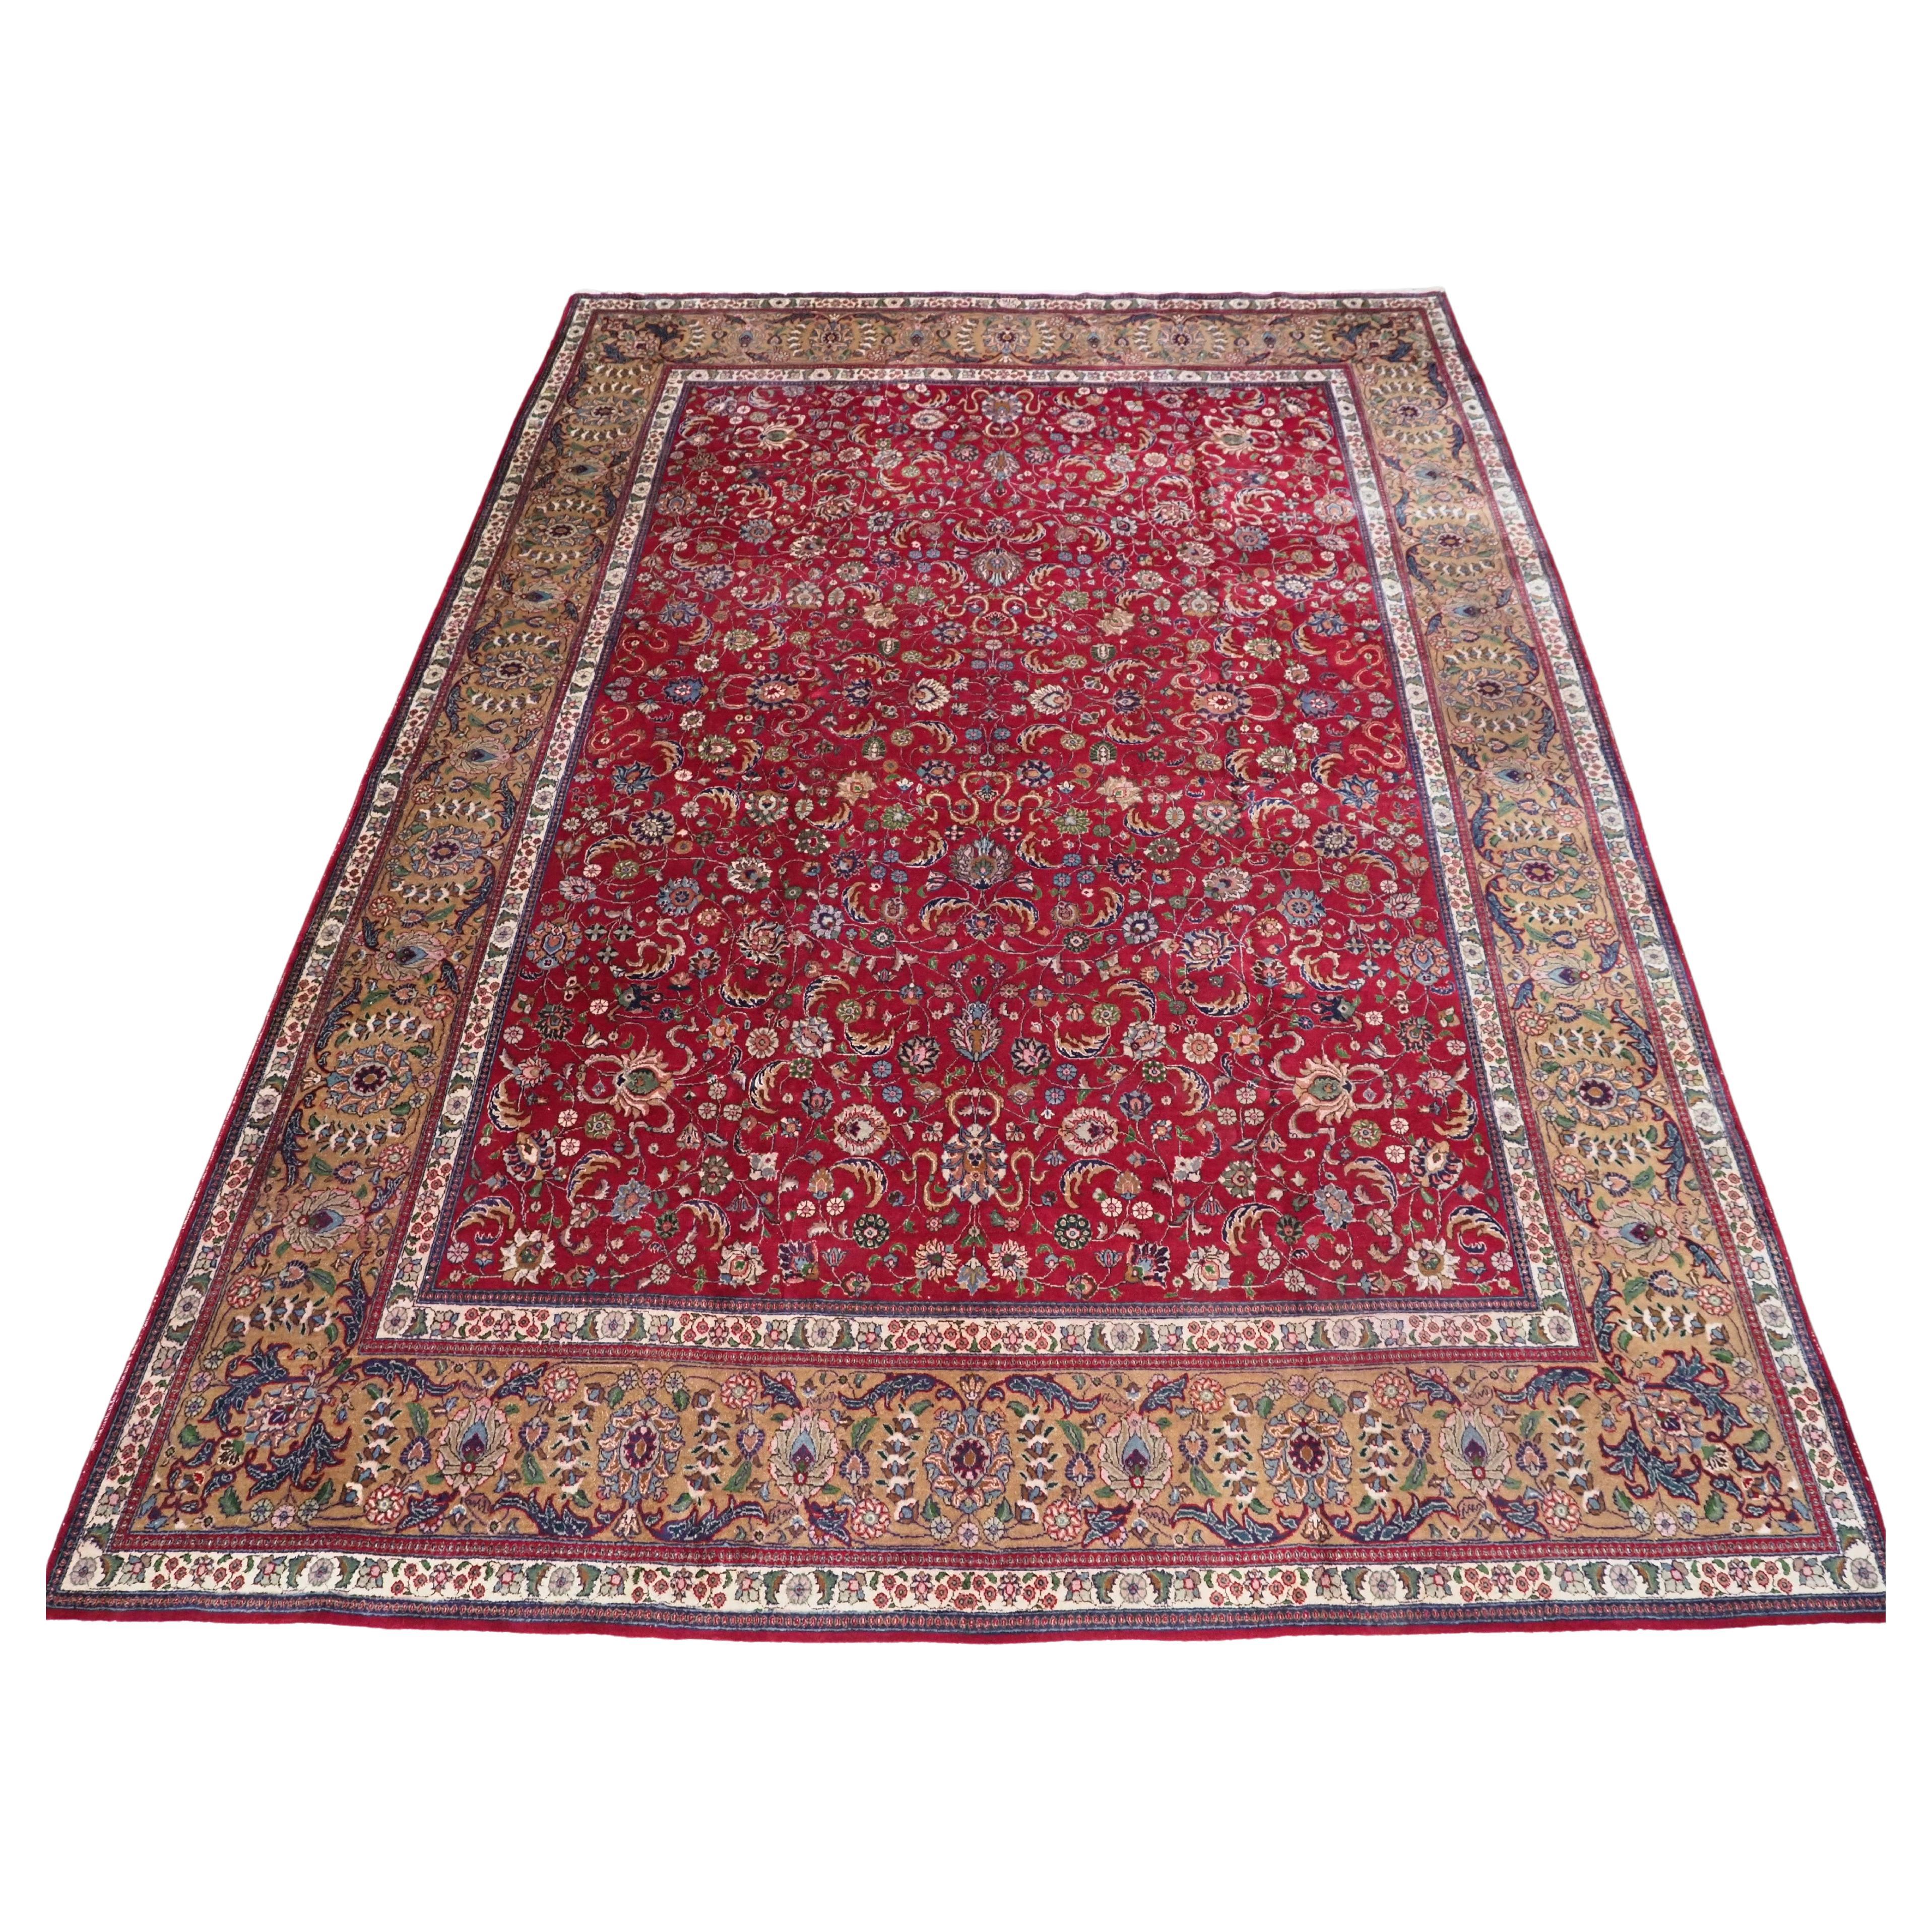 Vintage Tabriz carpet of traditional all over design in large room size. For Sale